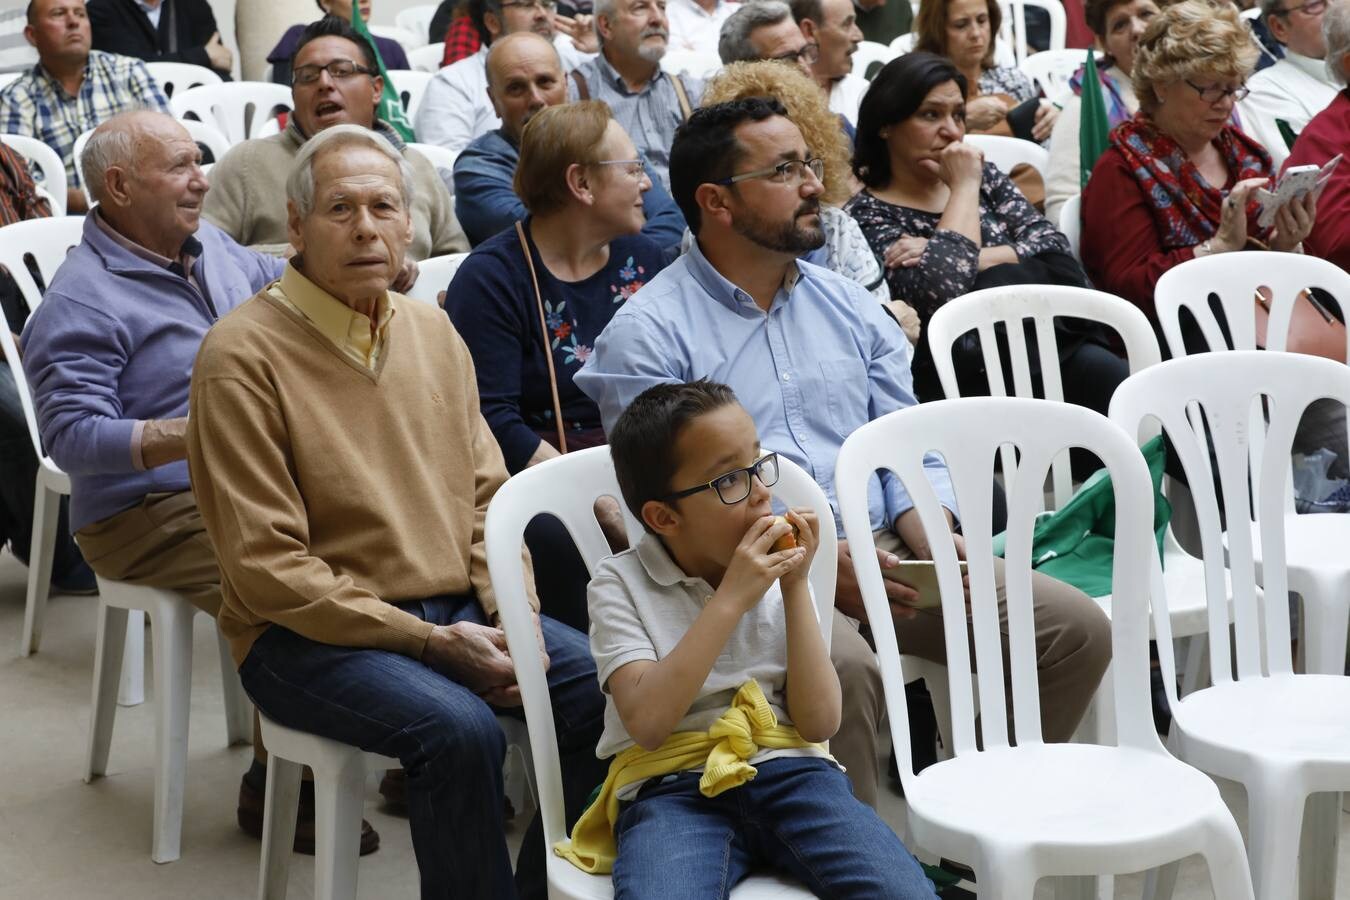 El mitin de Pedro Sánchez en Córdoba, en imágenes